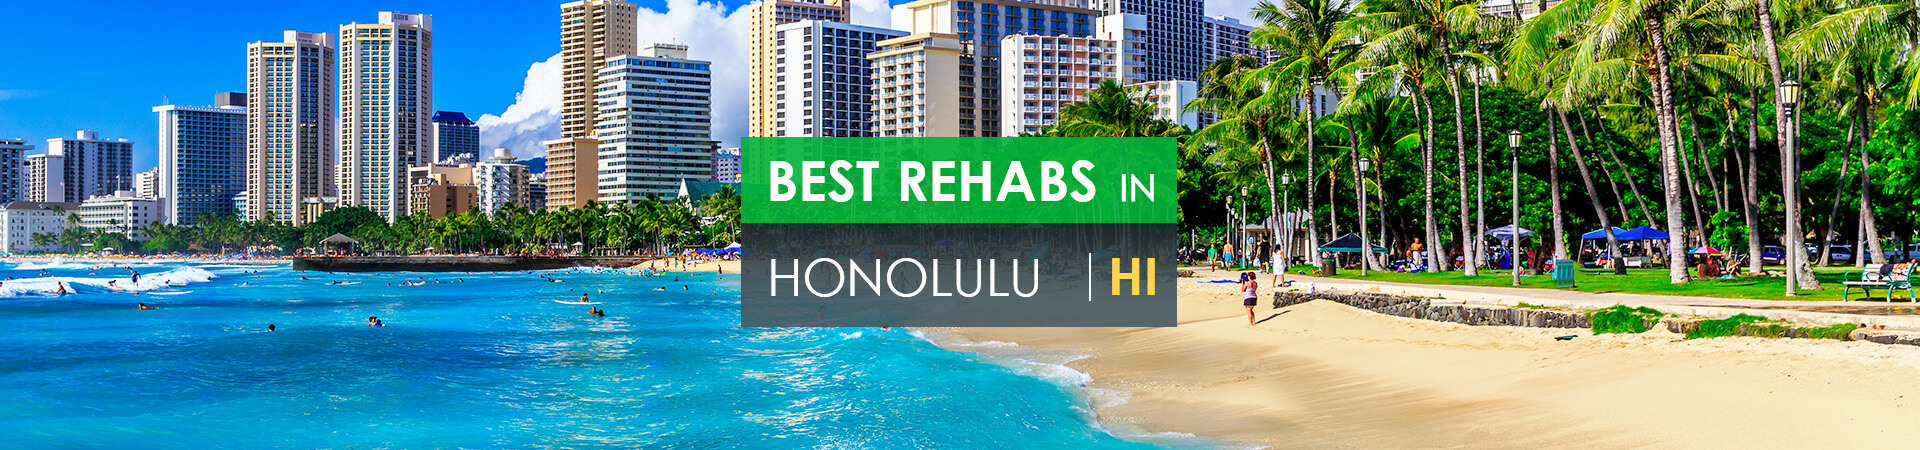 Best rehabs in Honolulu, HI